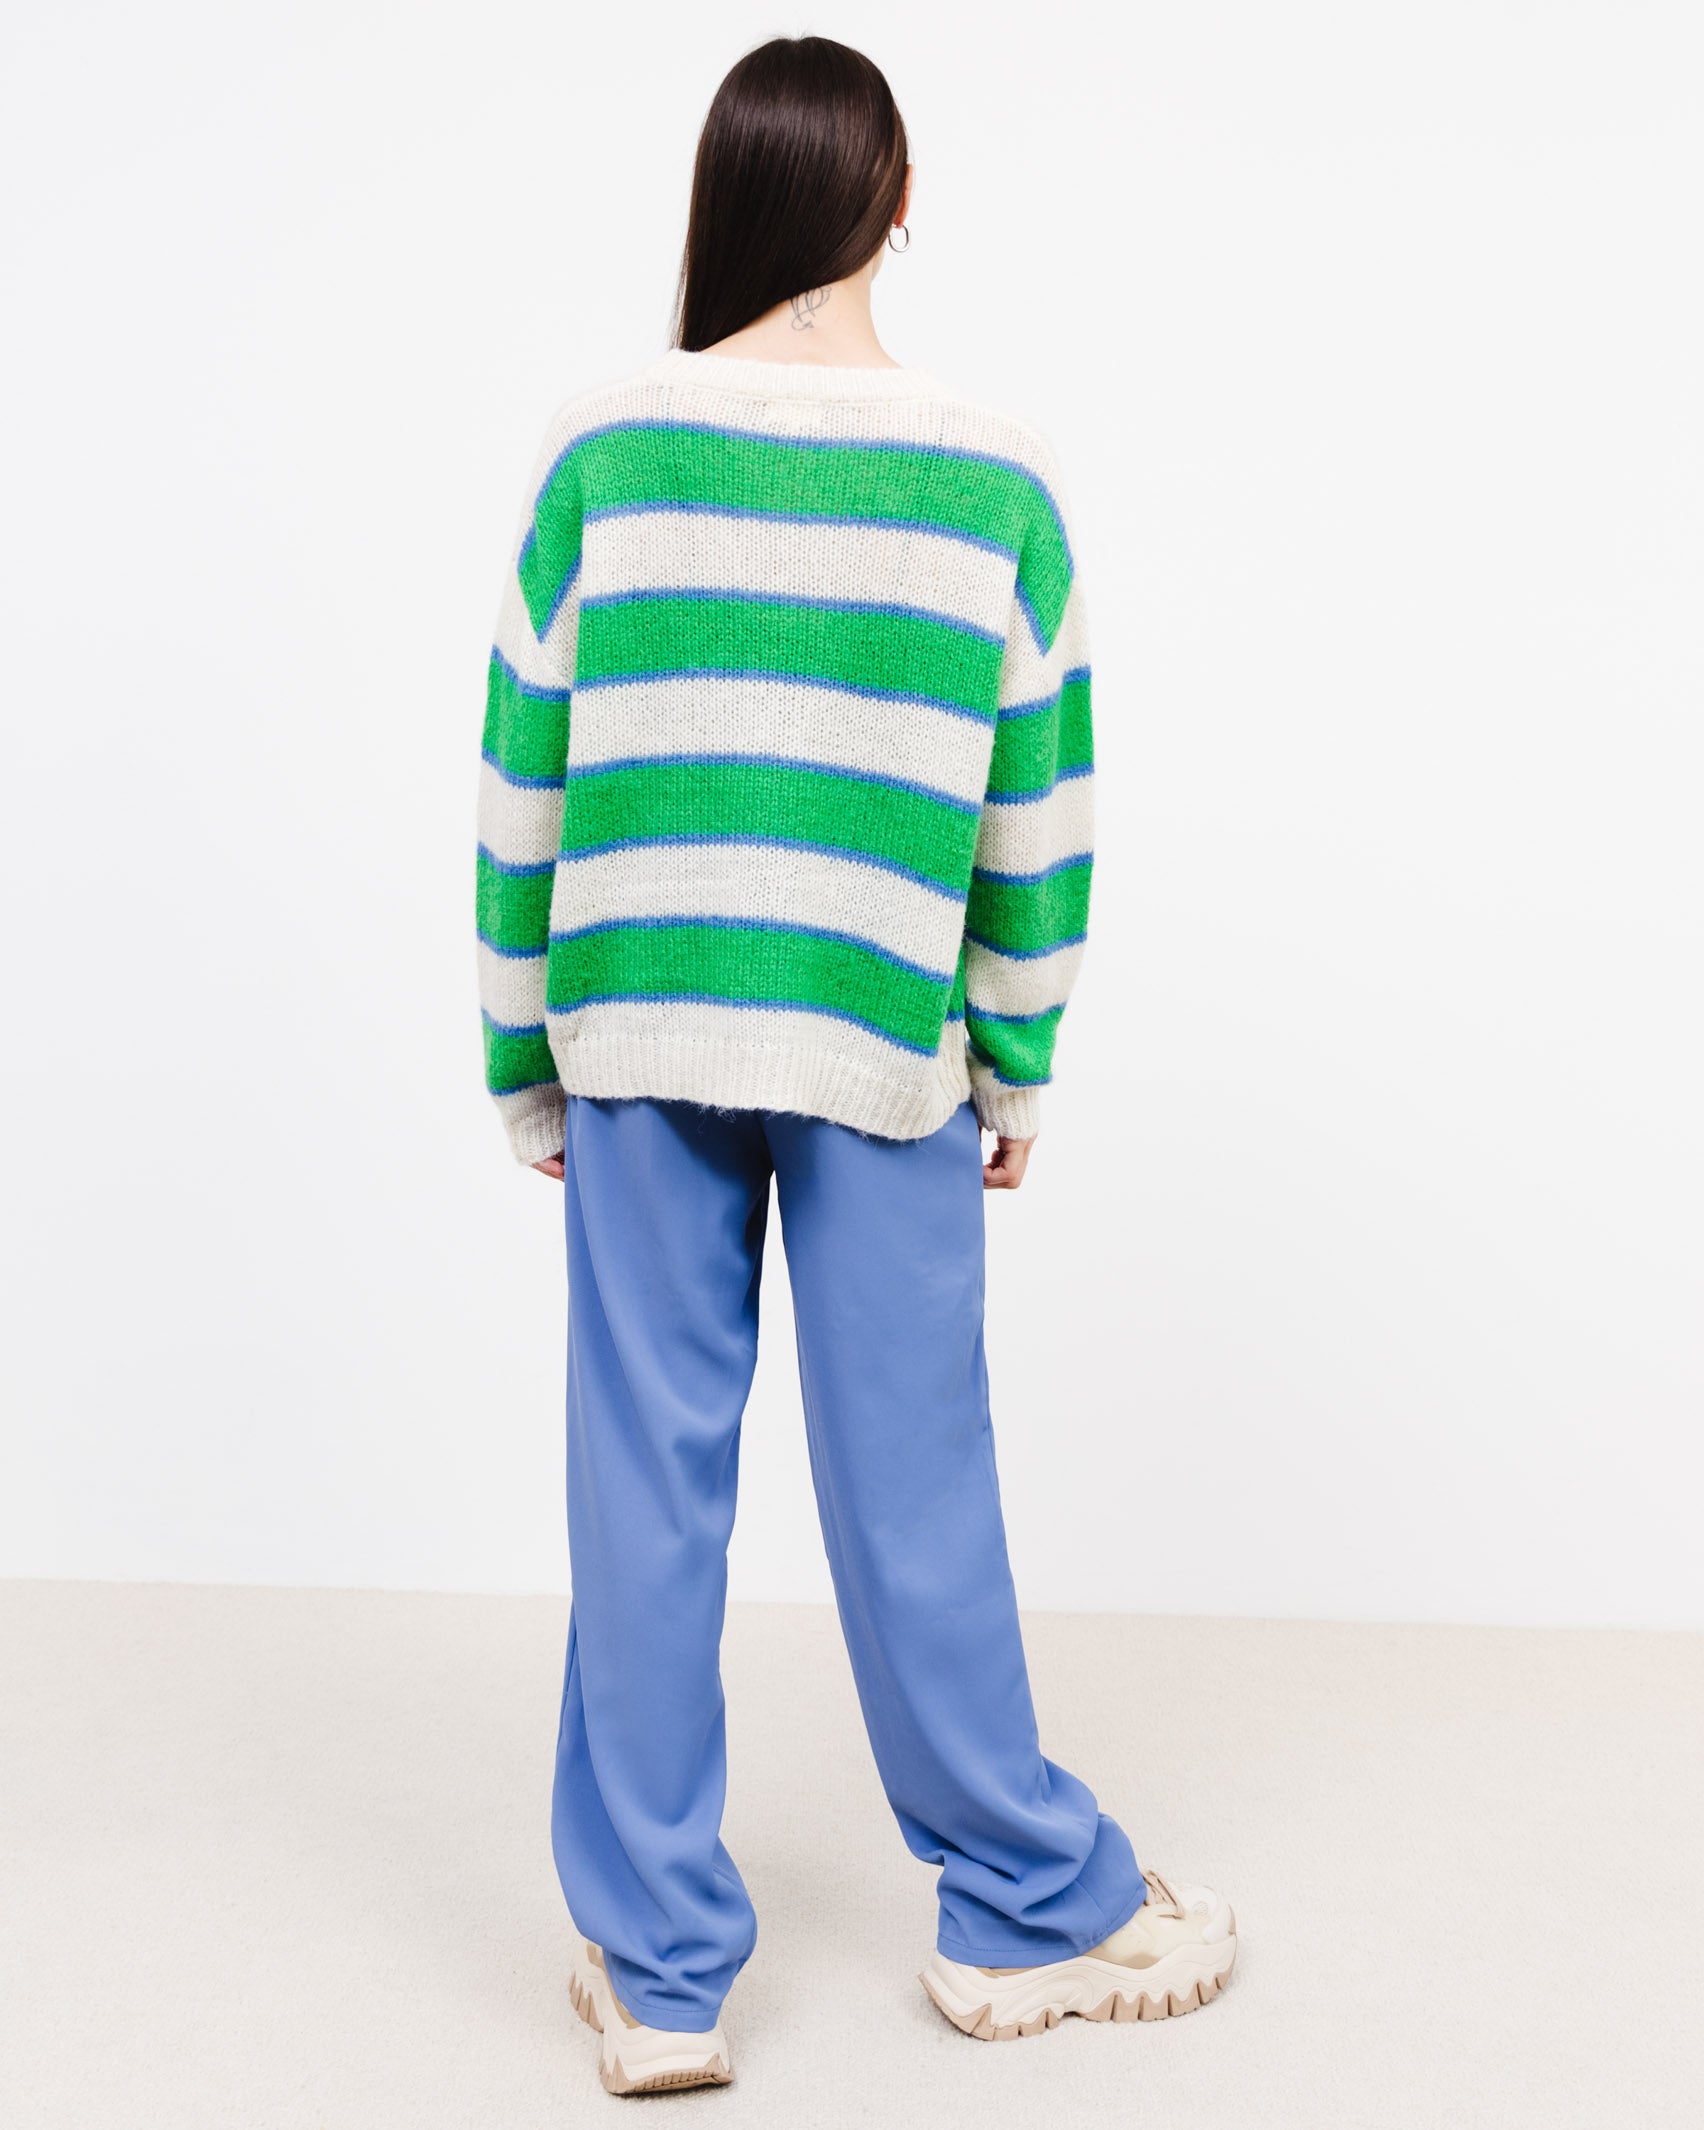 Pullover mit grünen Streifen - Broke + Schön